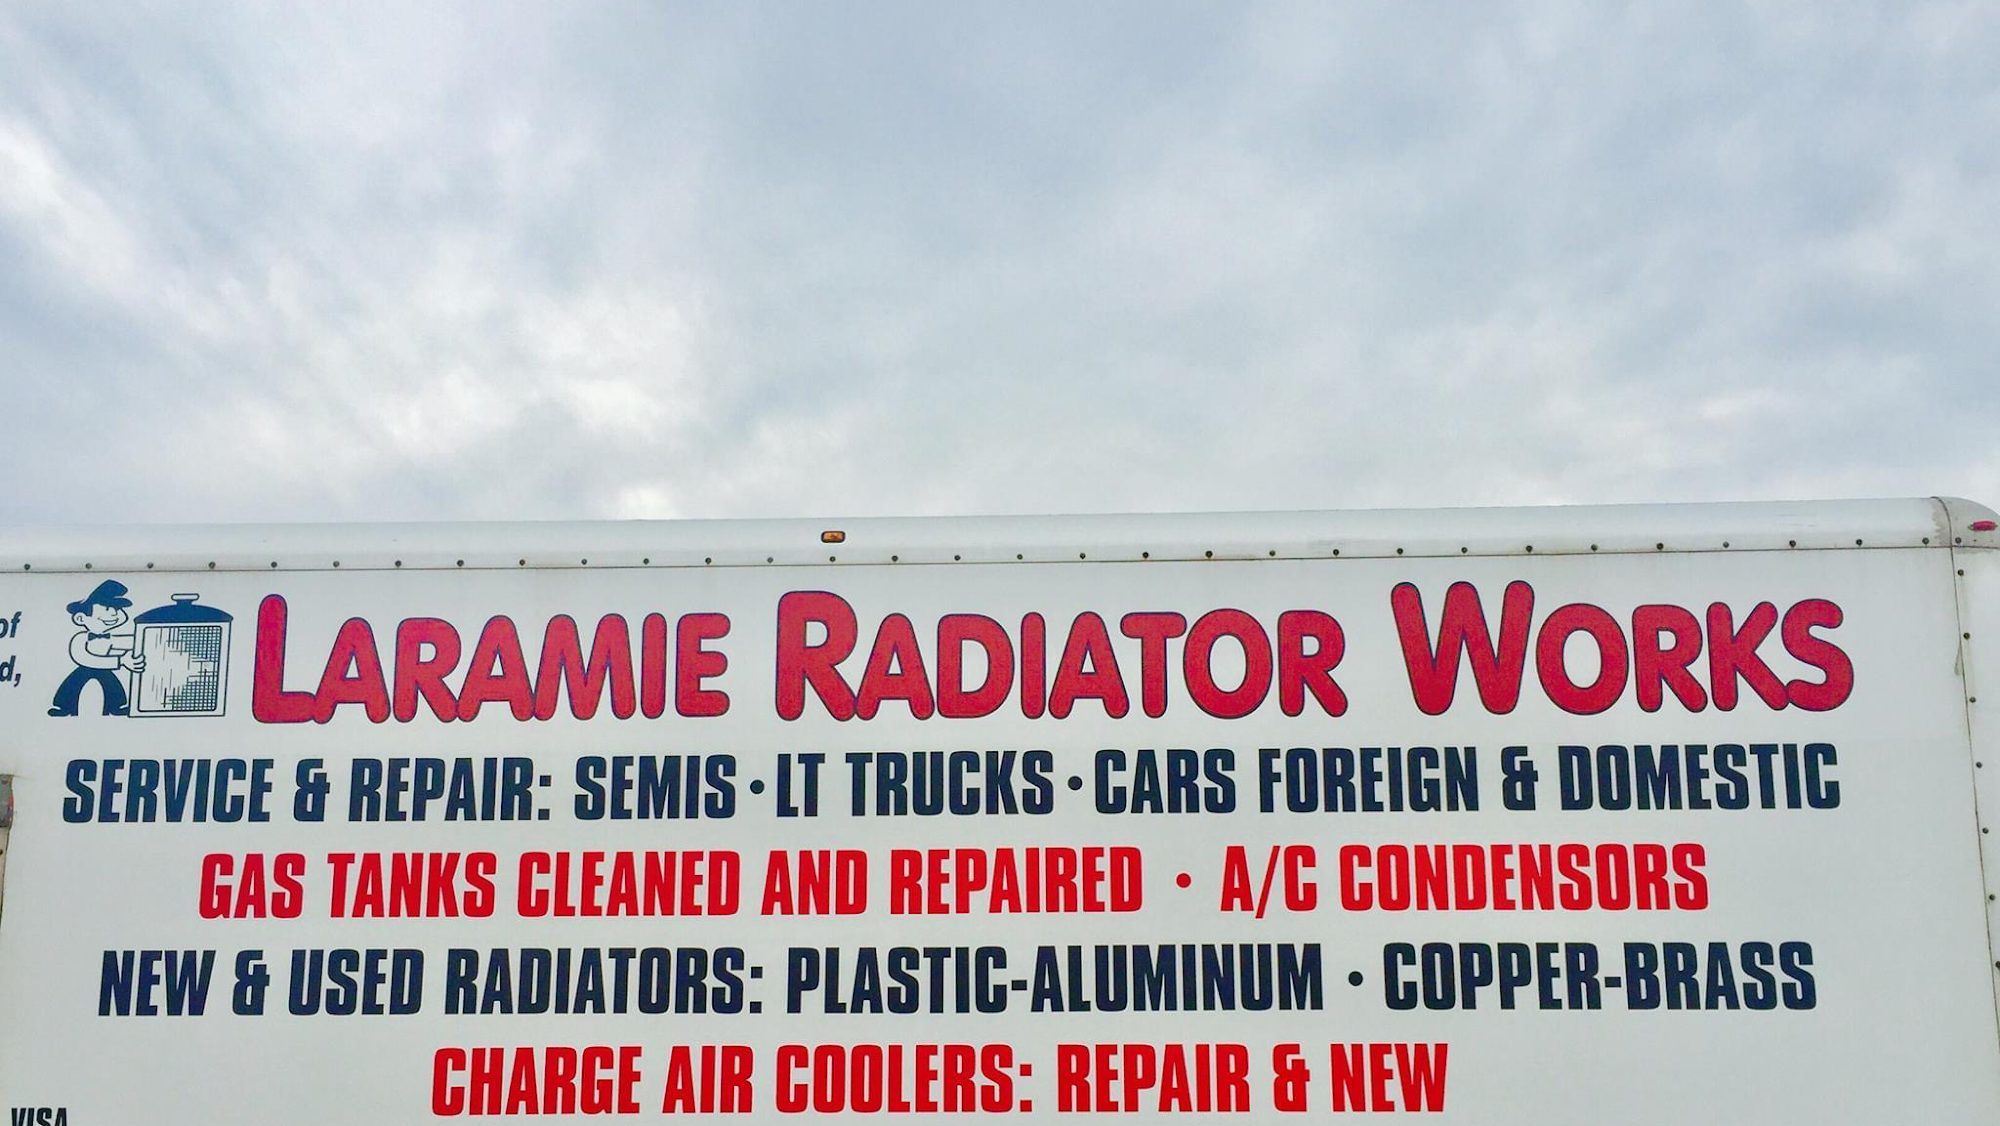 Laramie Radiator Work's Auto Recycling